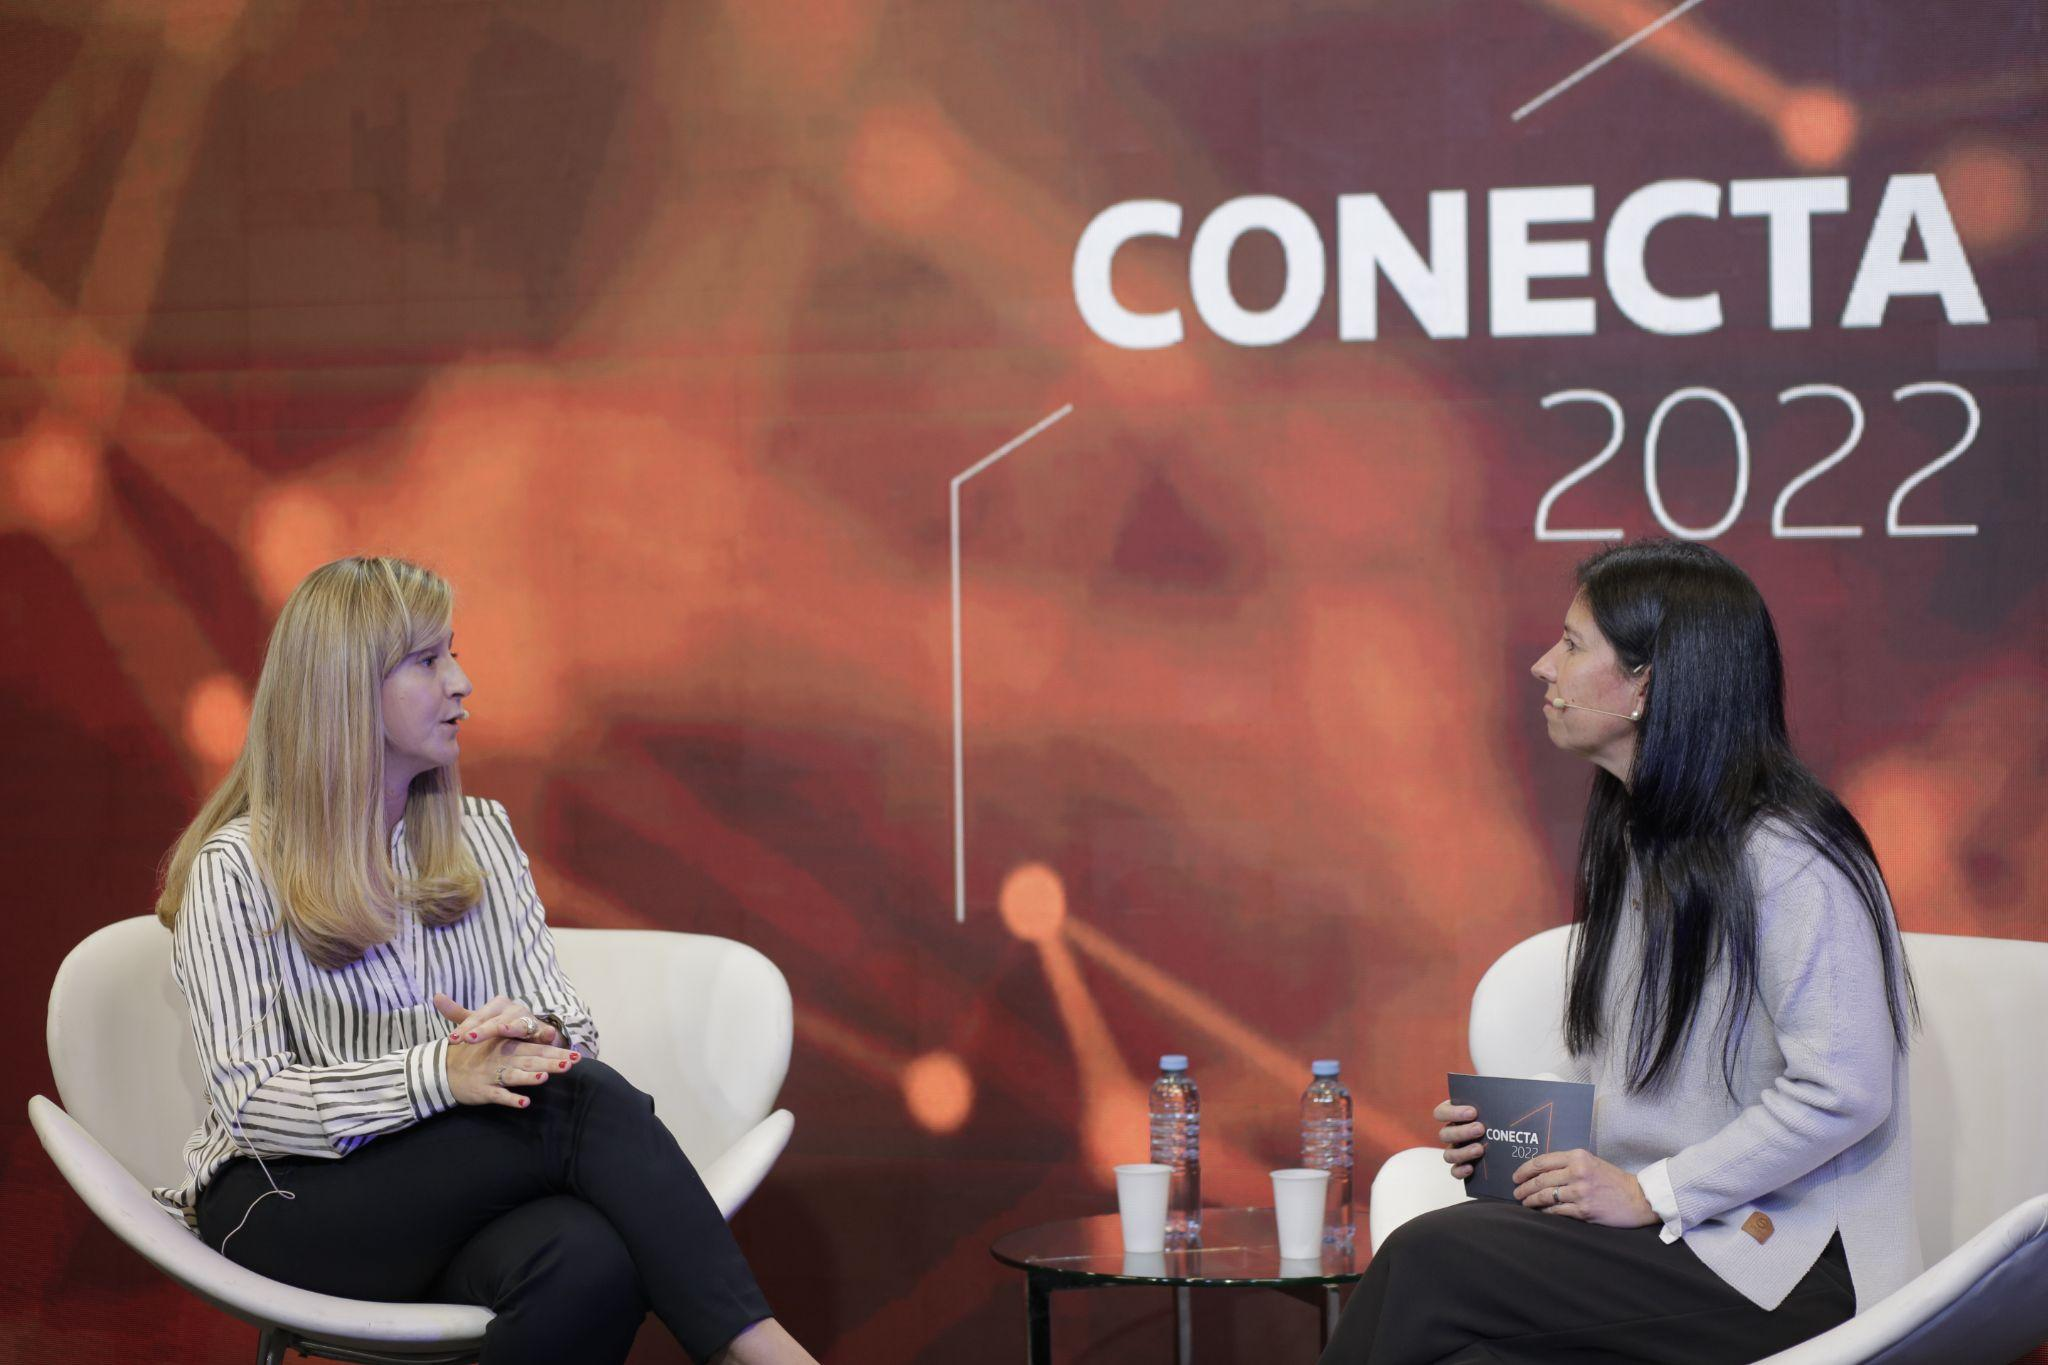 Florencia Rizzardi hablando sobre las nuevas generaciones como protagonistas de las pymes en Conecta 2022